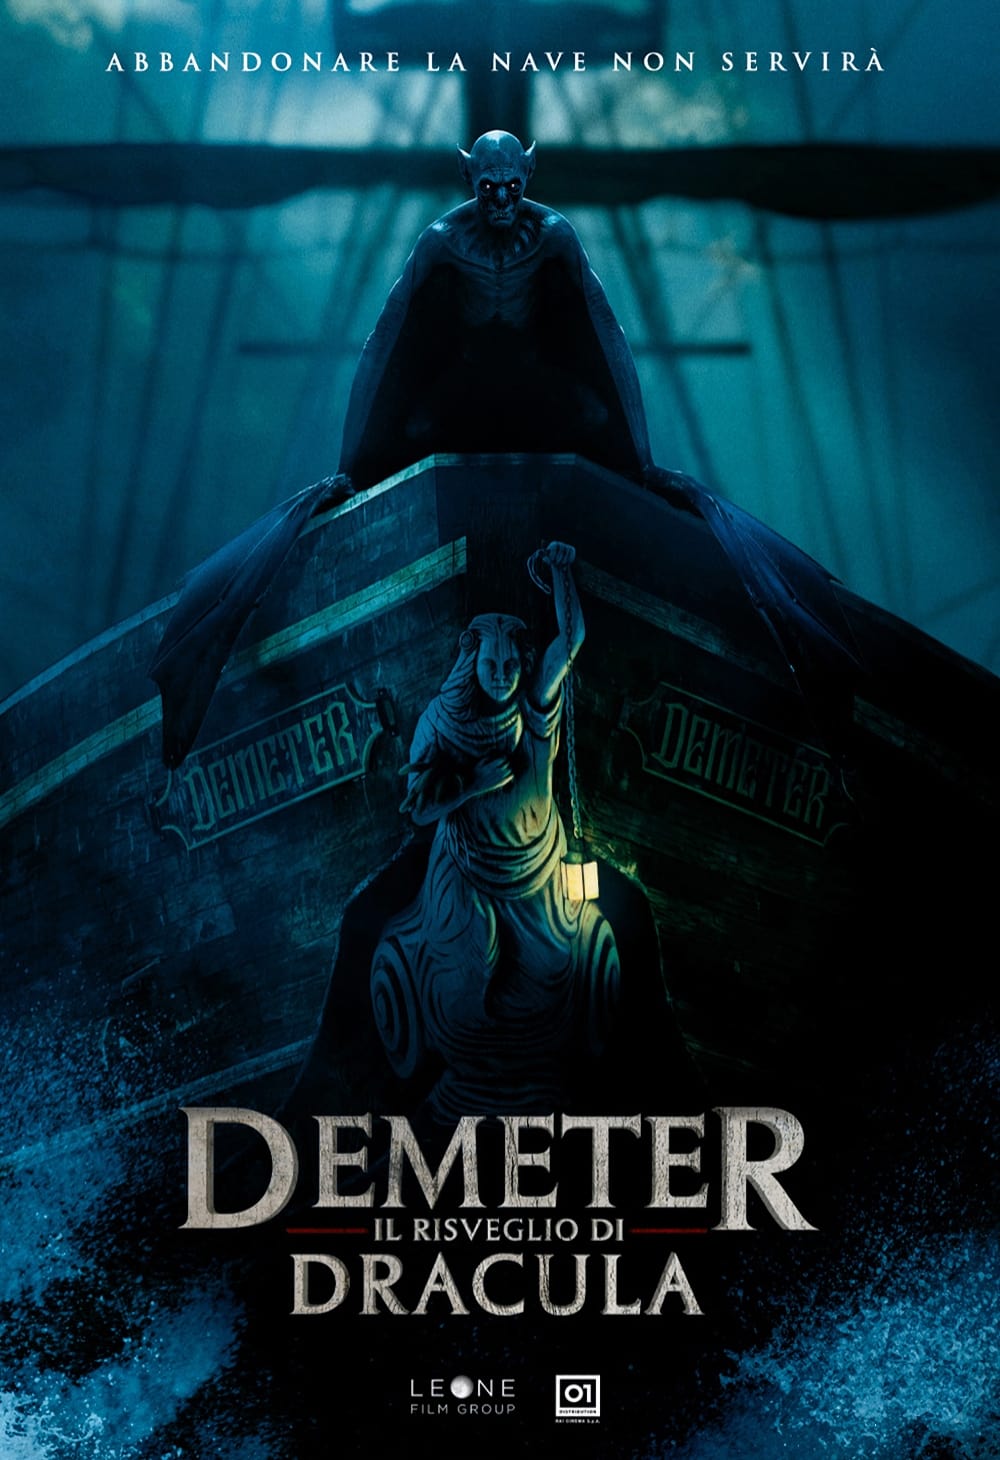 Demeter - Il risveglio di Dracula film